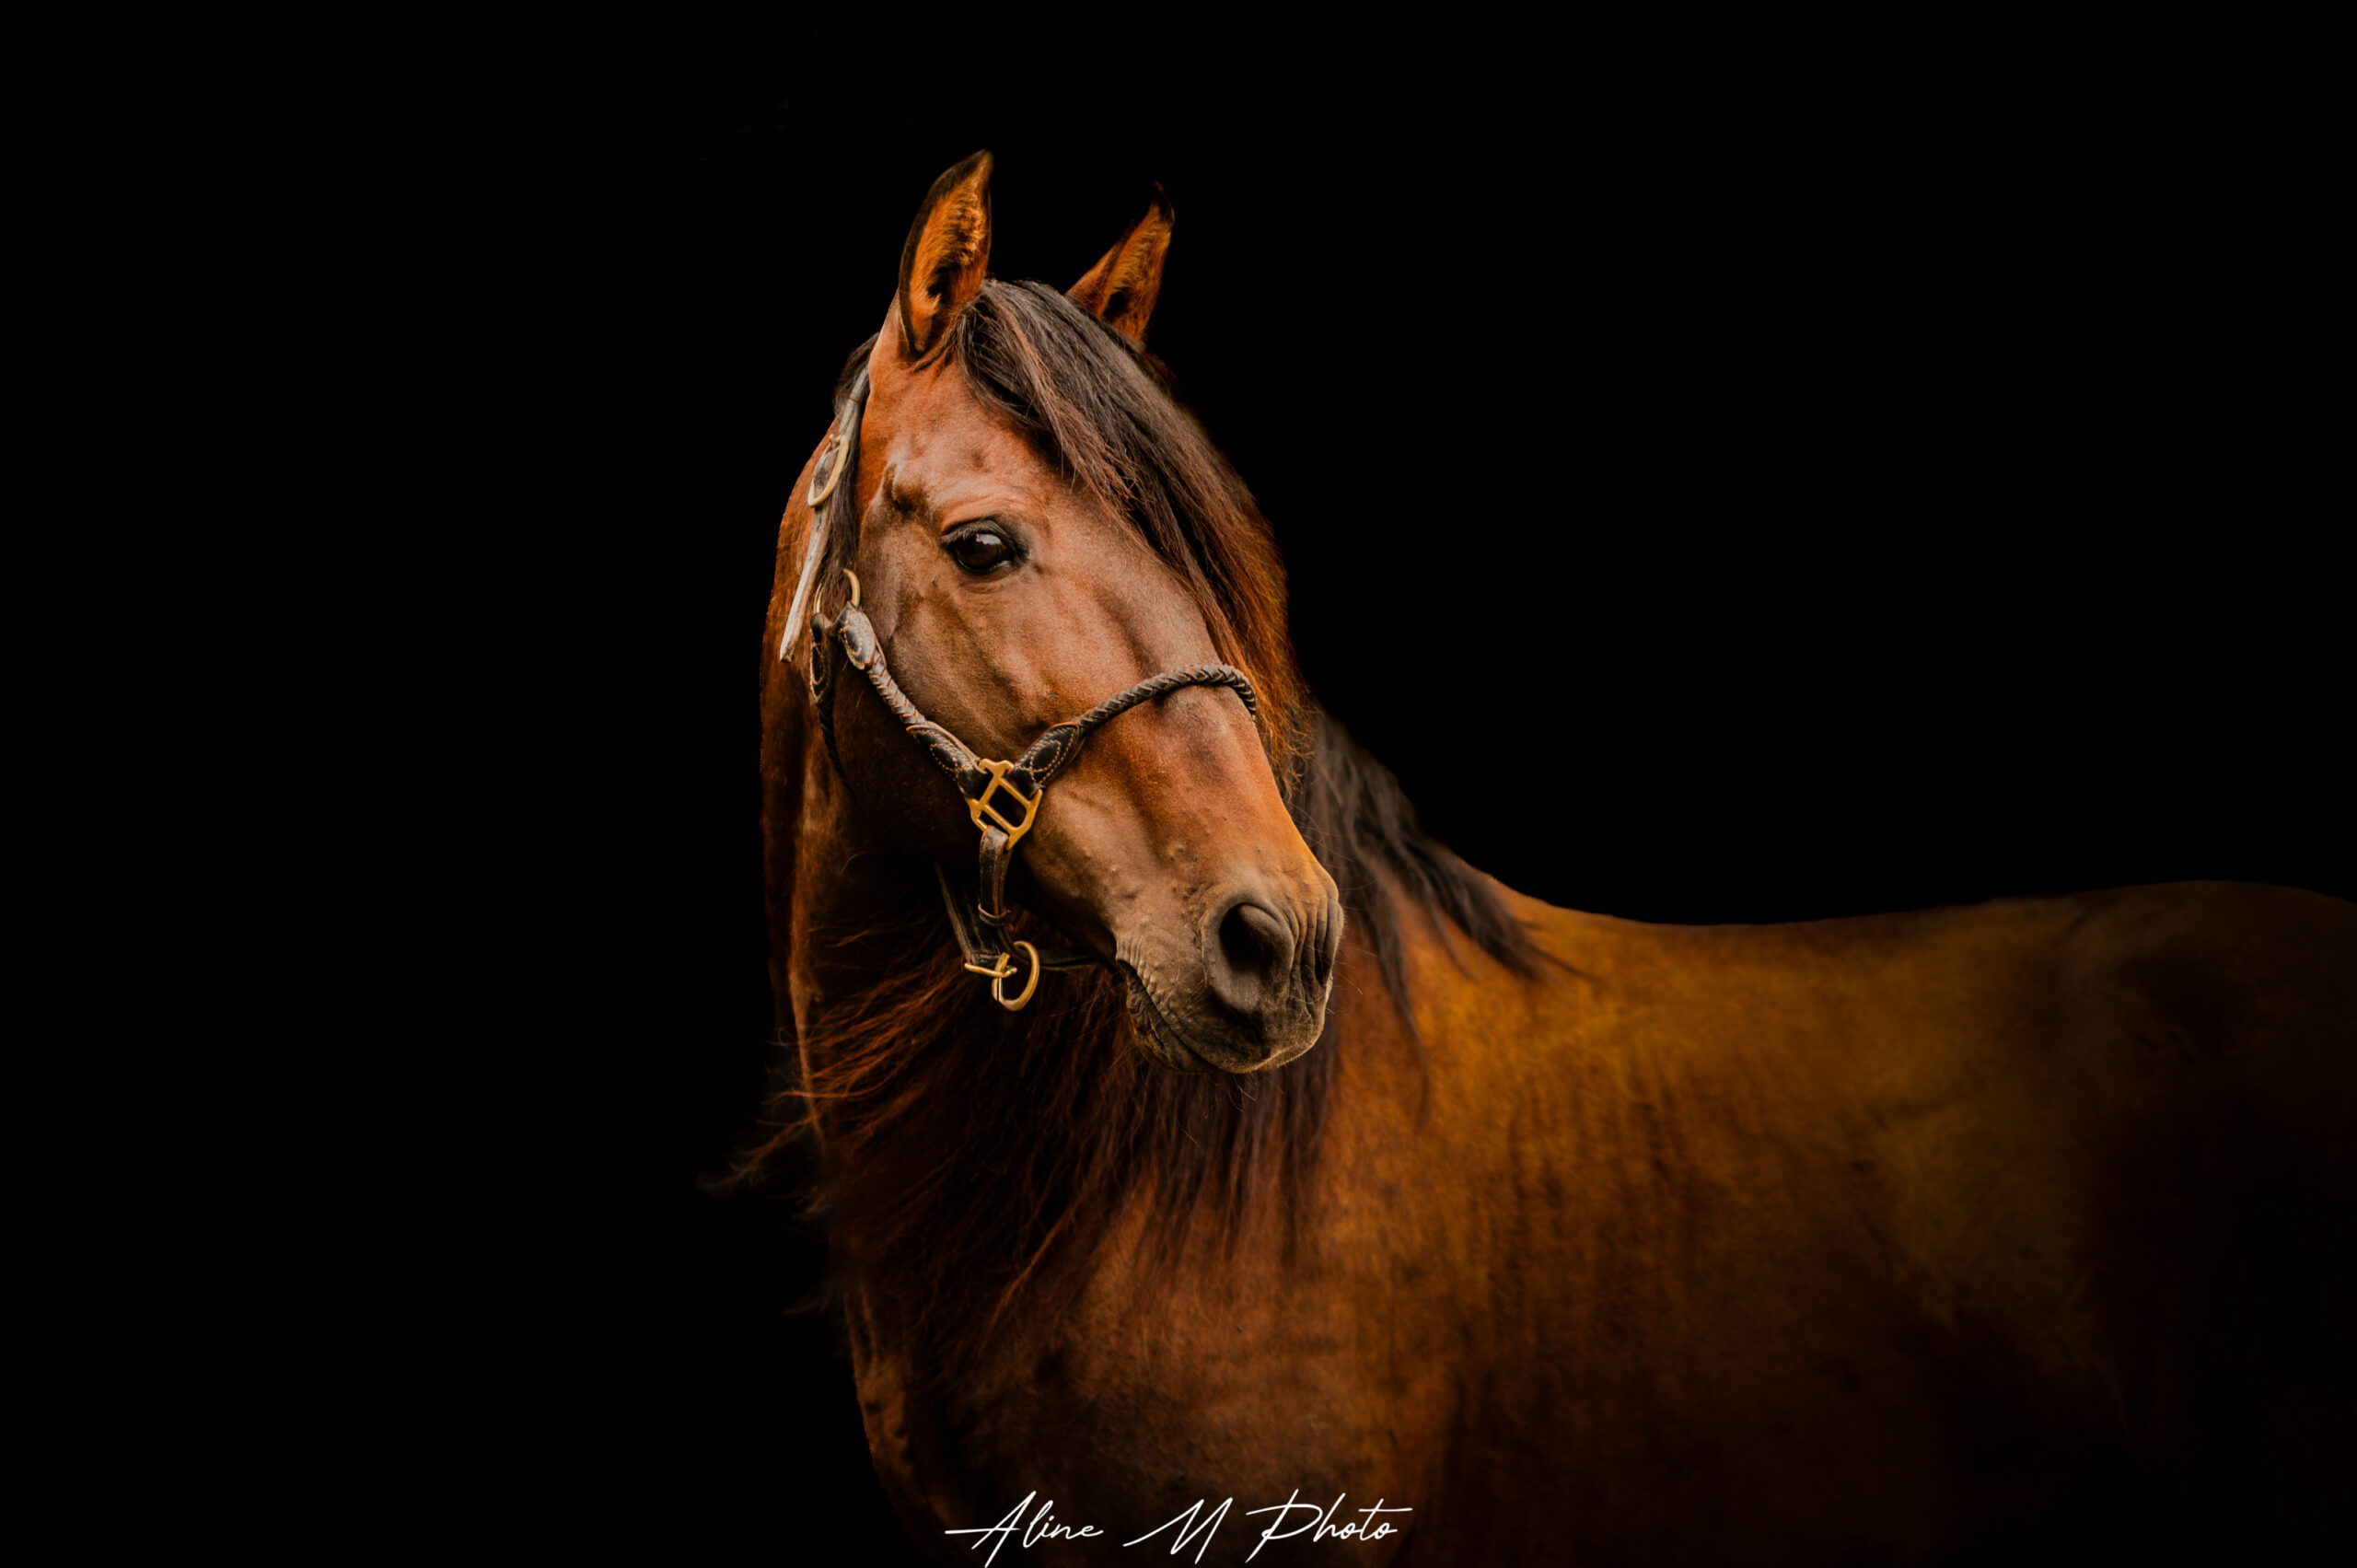 chevaux oeuvre d'art fond noir studio cheval paillette alsace lorraine grand est photographe professionnelle animalier beauté equestre équin horse